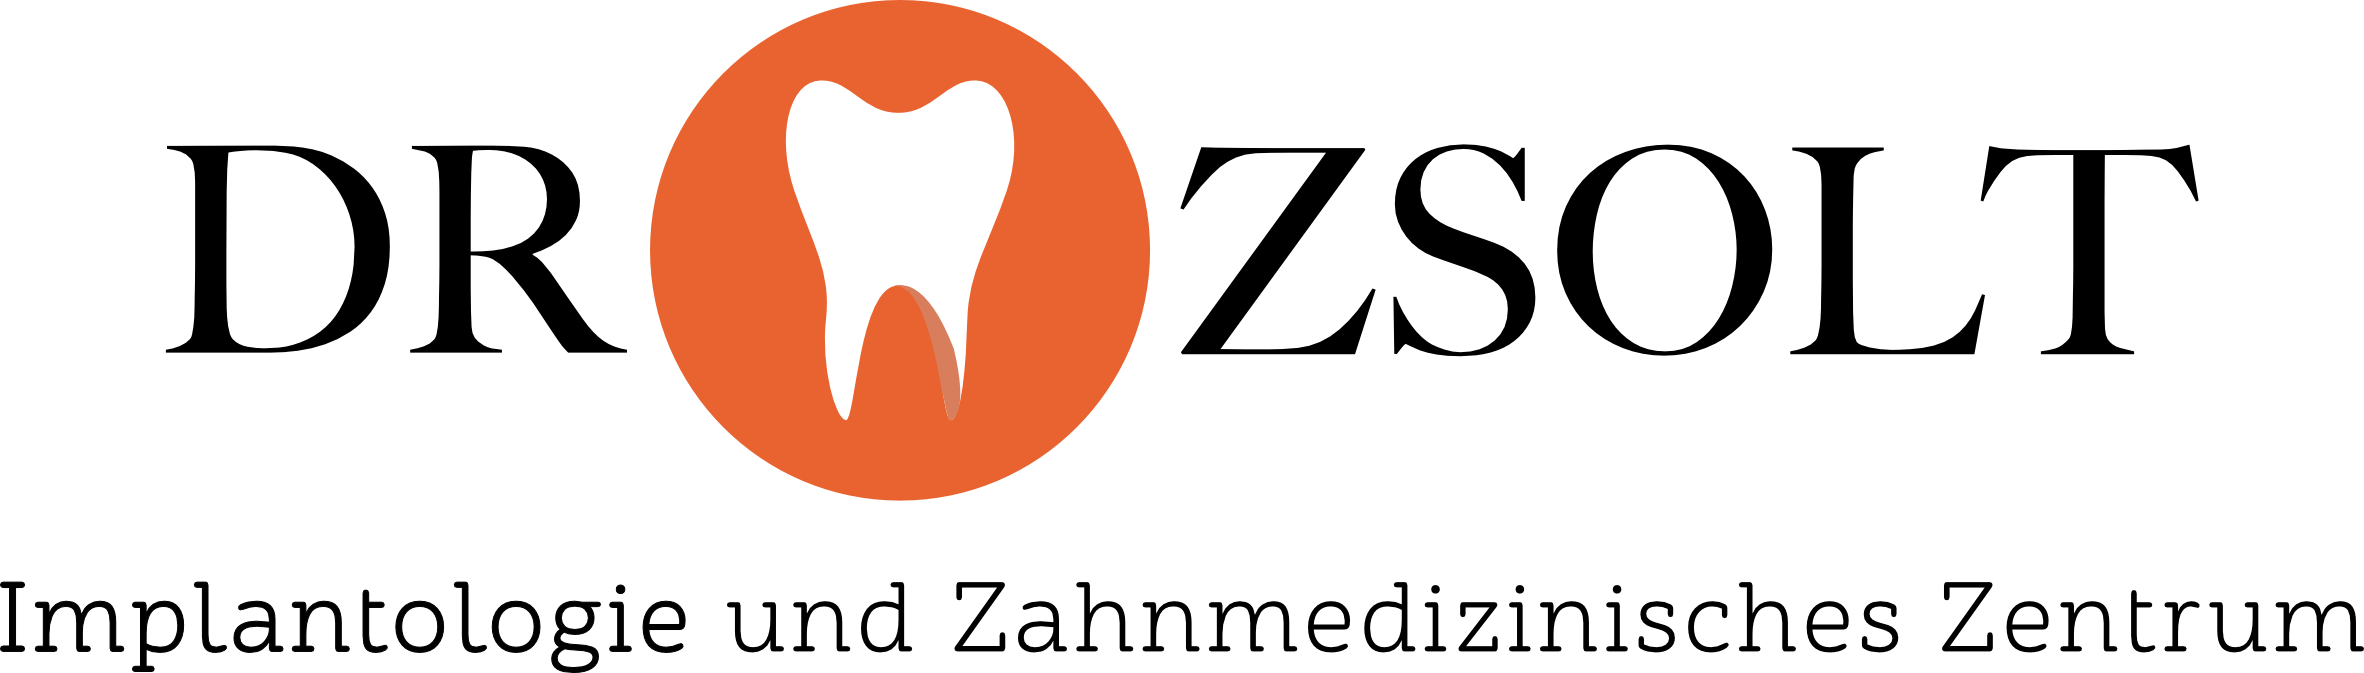 Dr Zsolt Implantologie und Zahnmedizinisches Zentrum